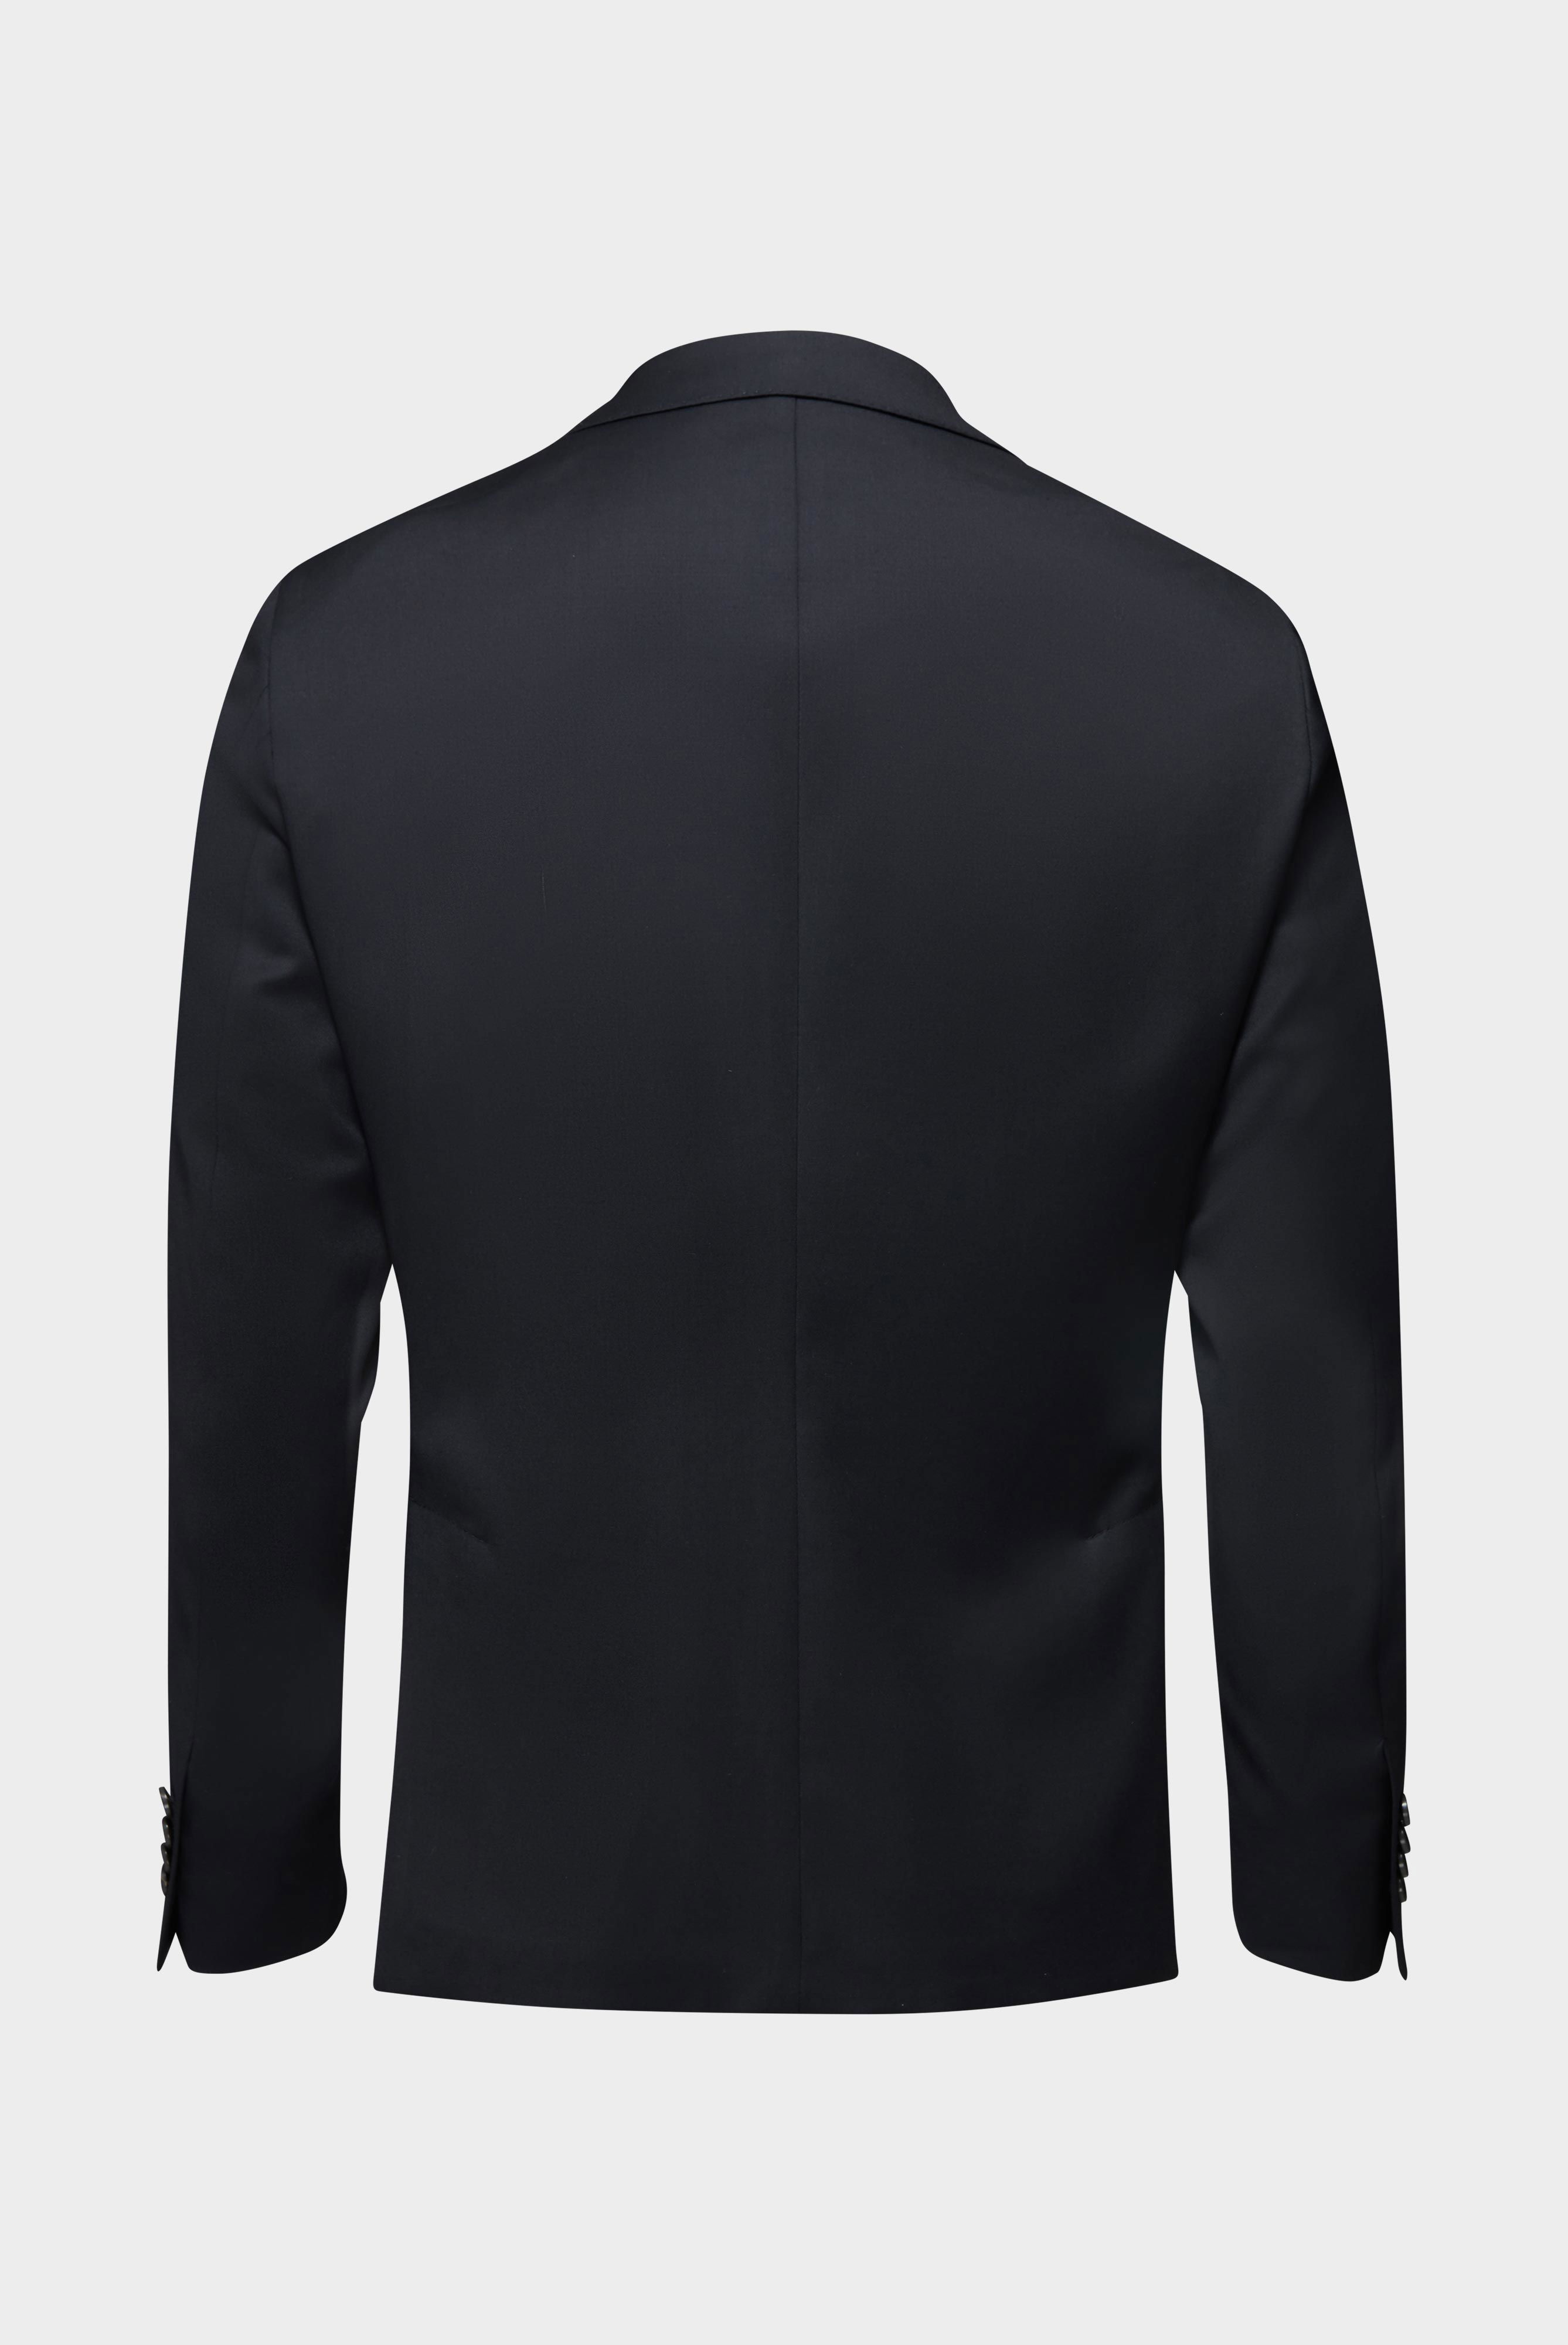 Blazers+Wool Jacket Slim Fit+20.7759..H01010.099.44